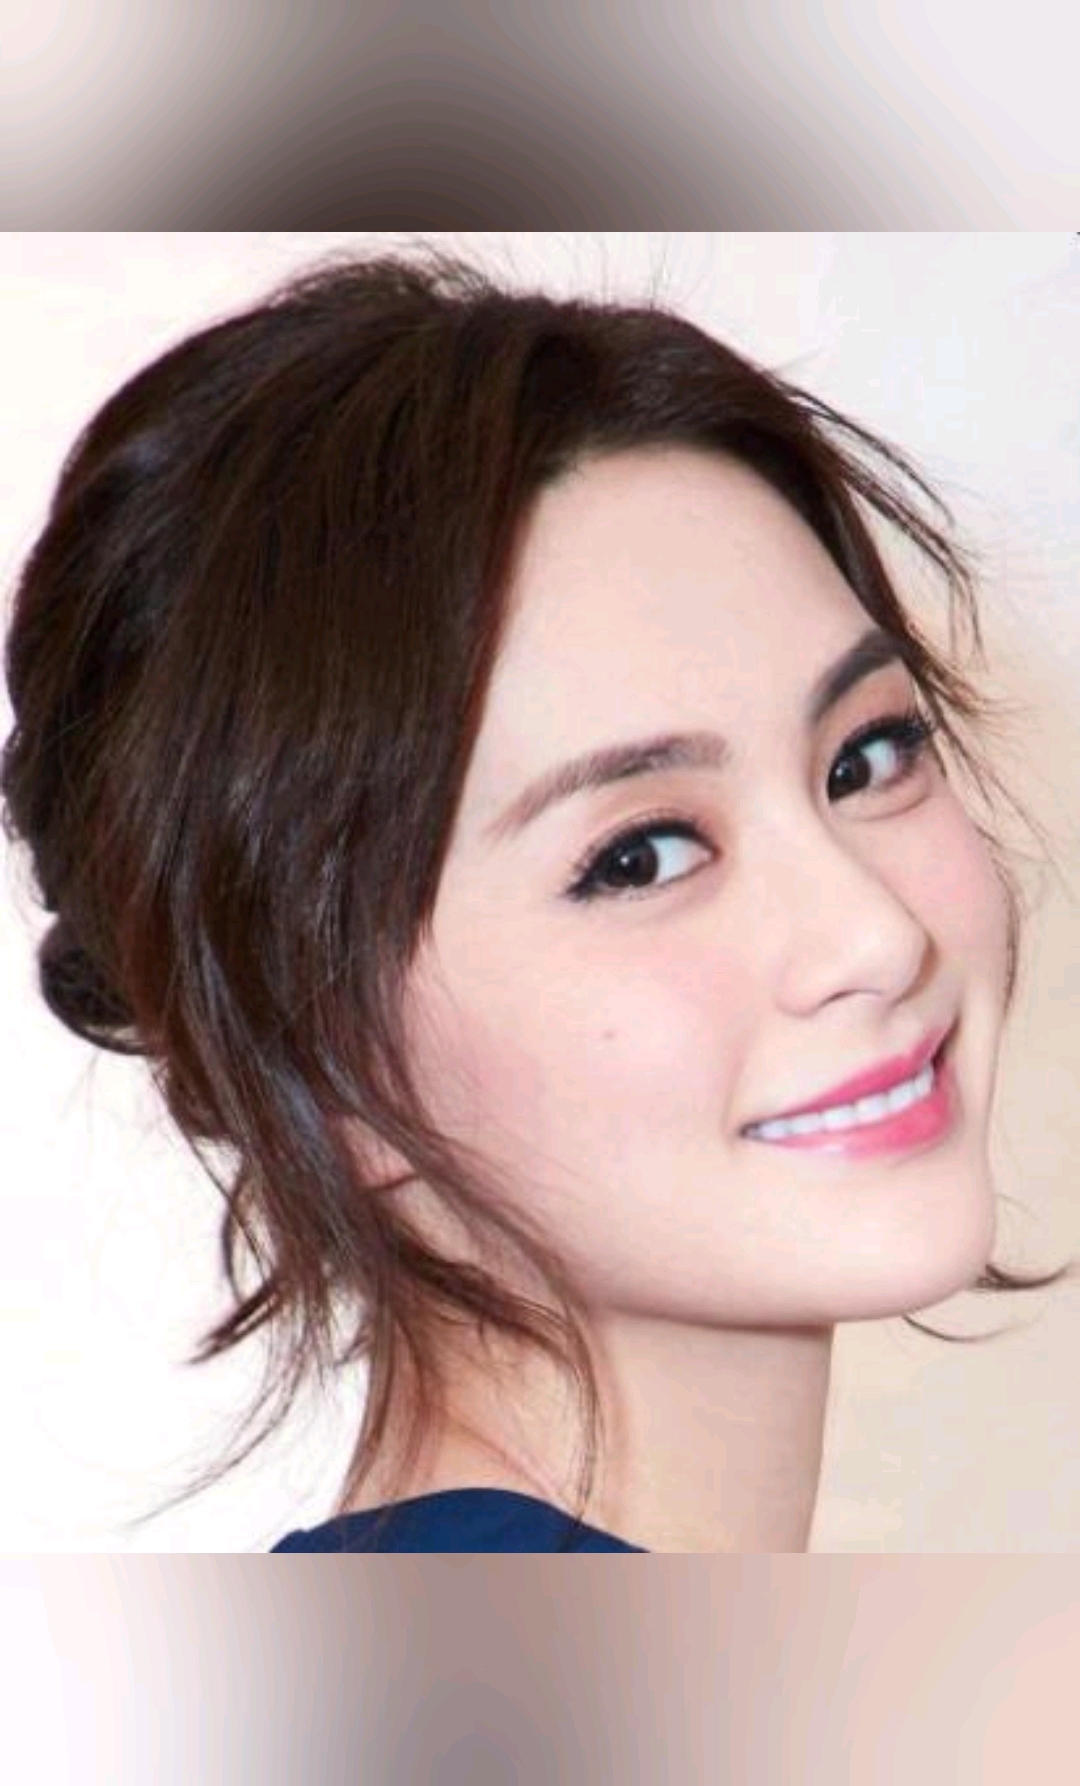 明星钟欣潼,香港娱乐圈歌手和演员,是具有实力的艺人